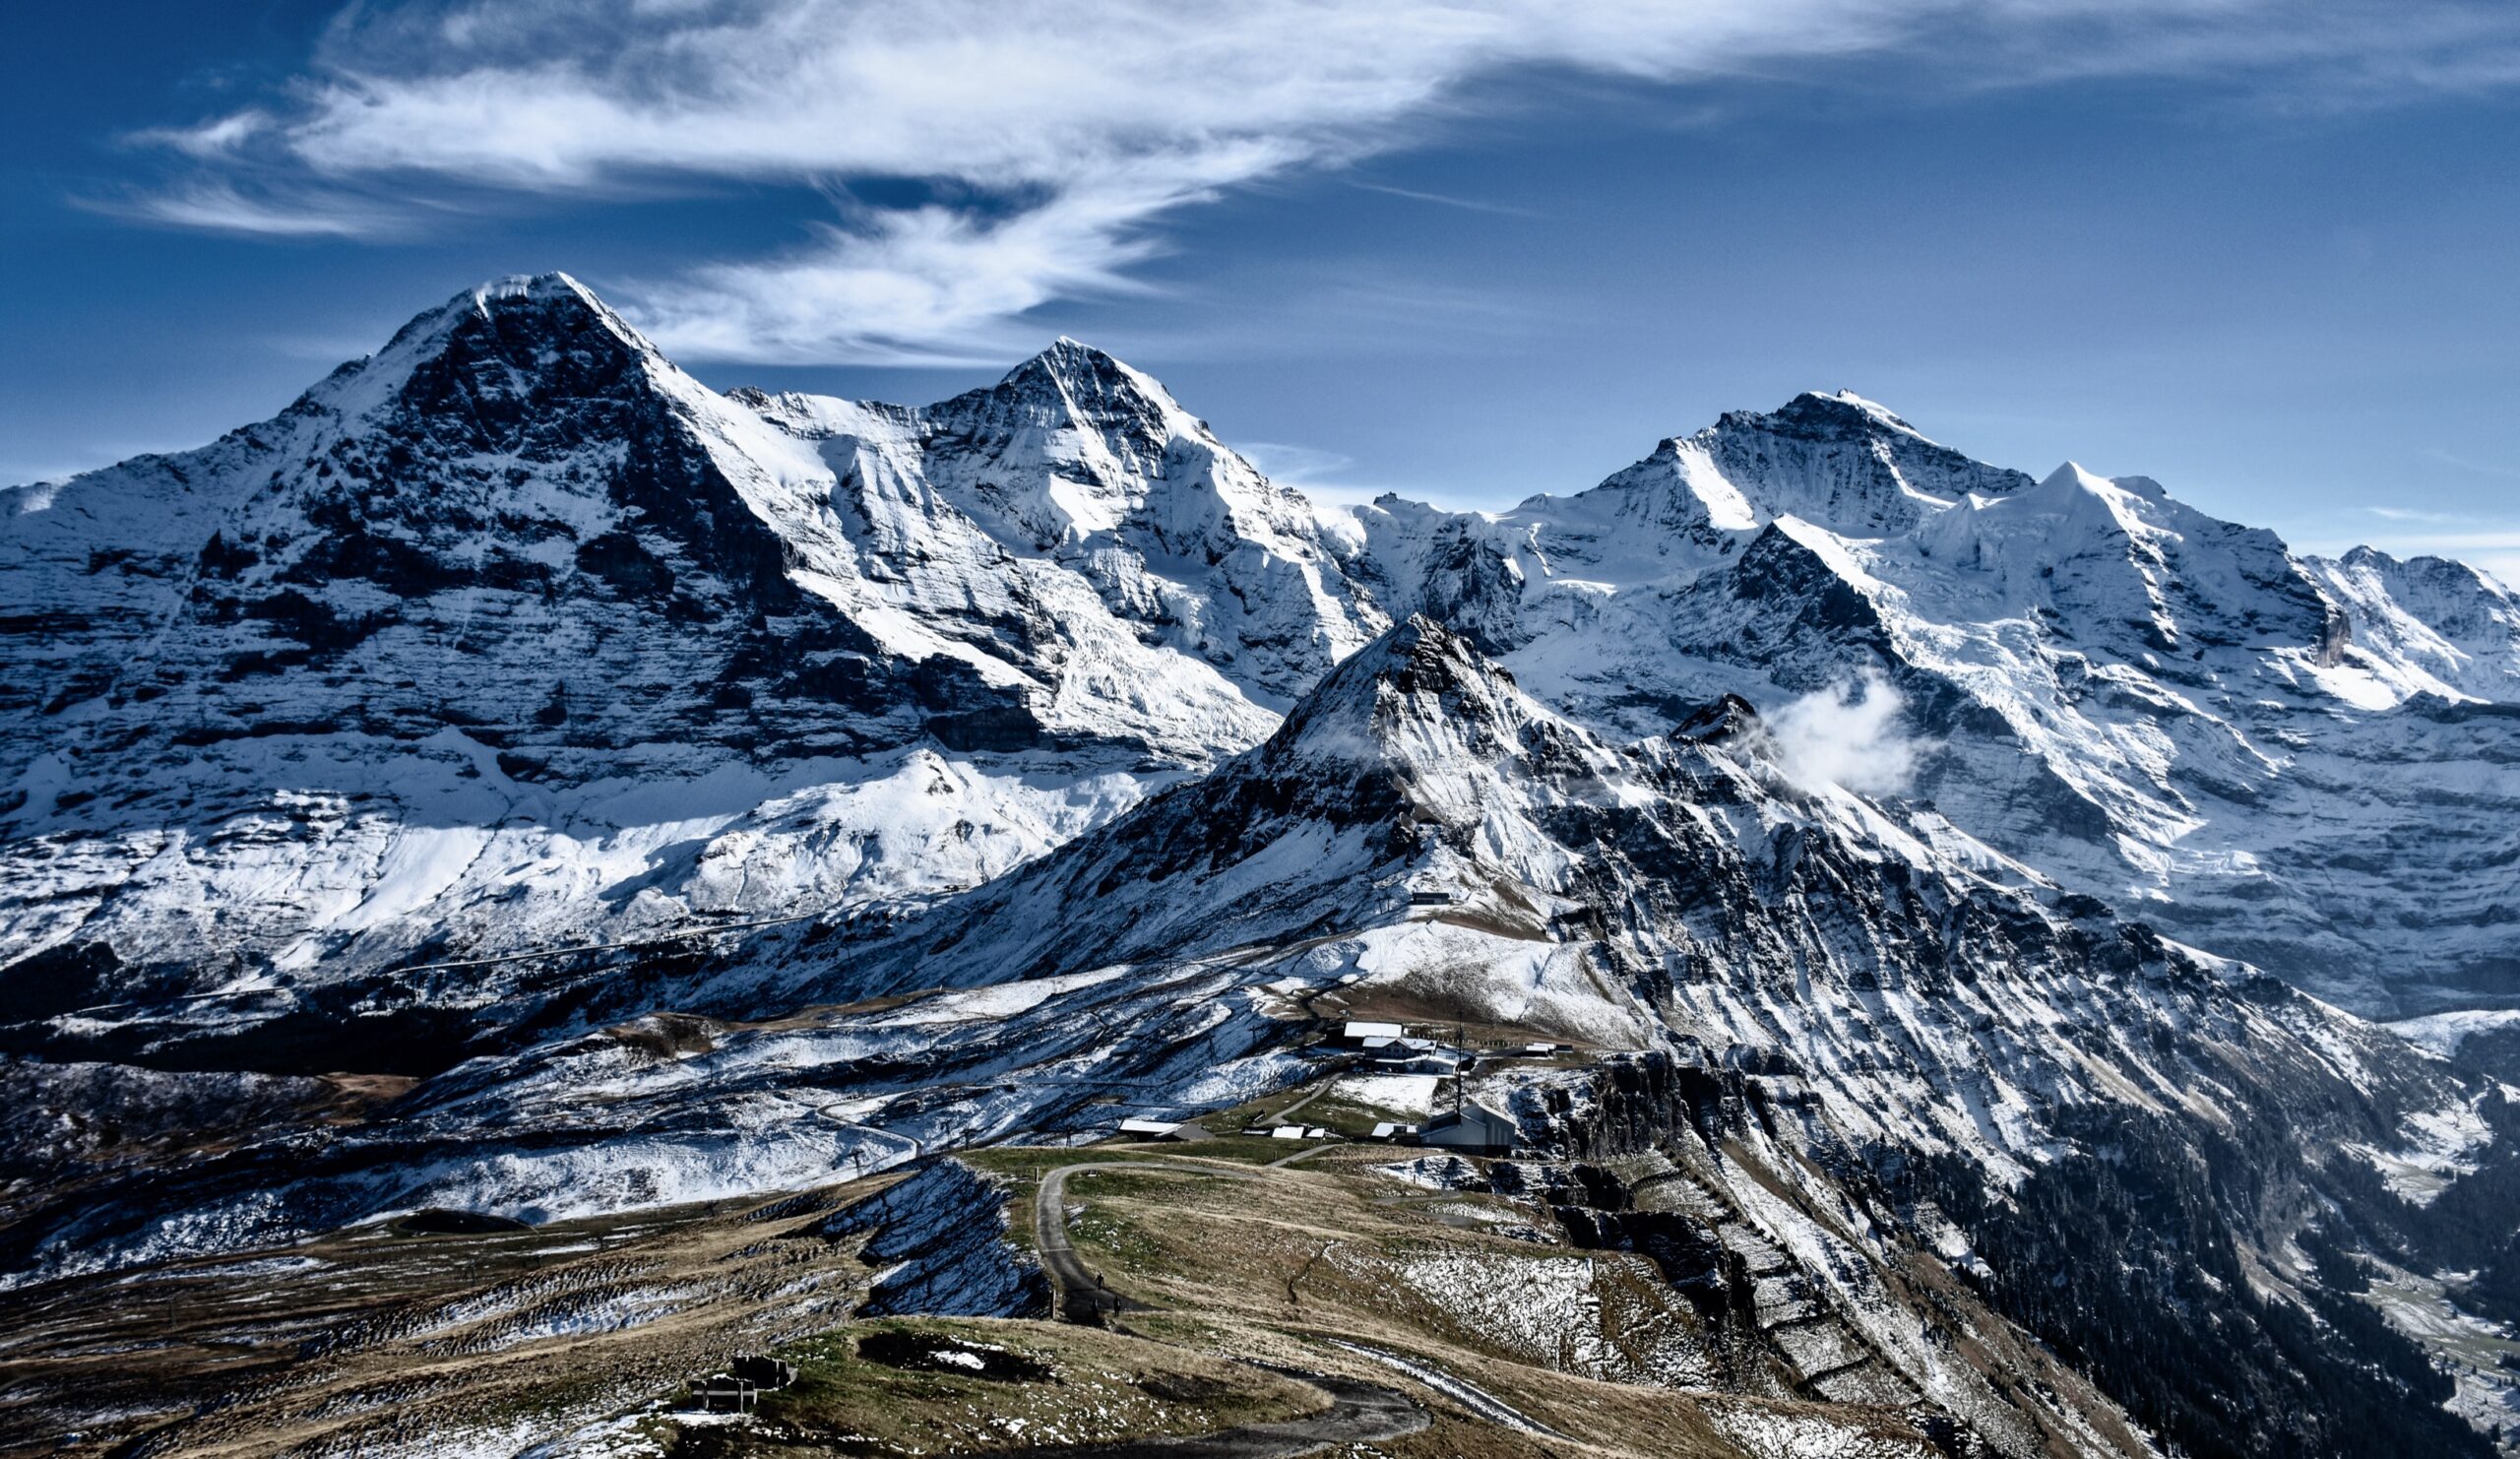 Männlichen Royal Walk: A Hidden Gem in the Swiss Alps